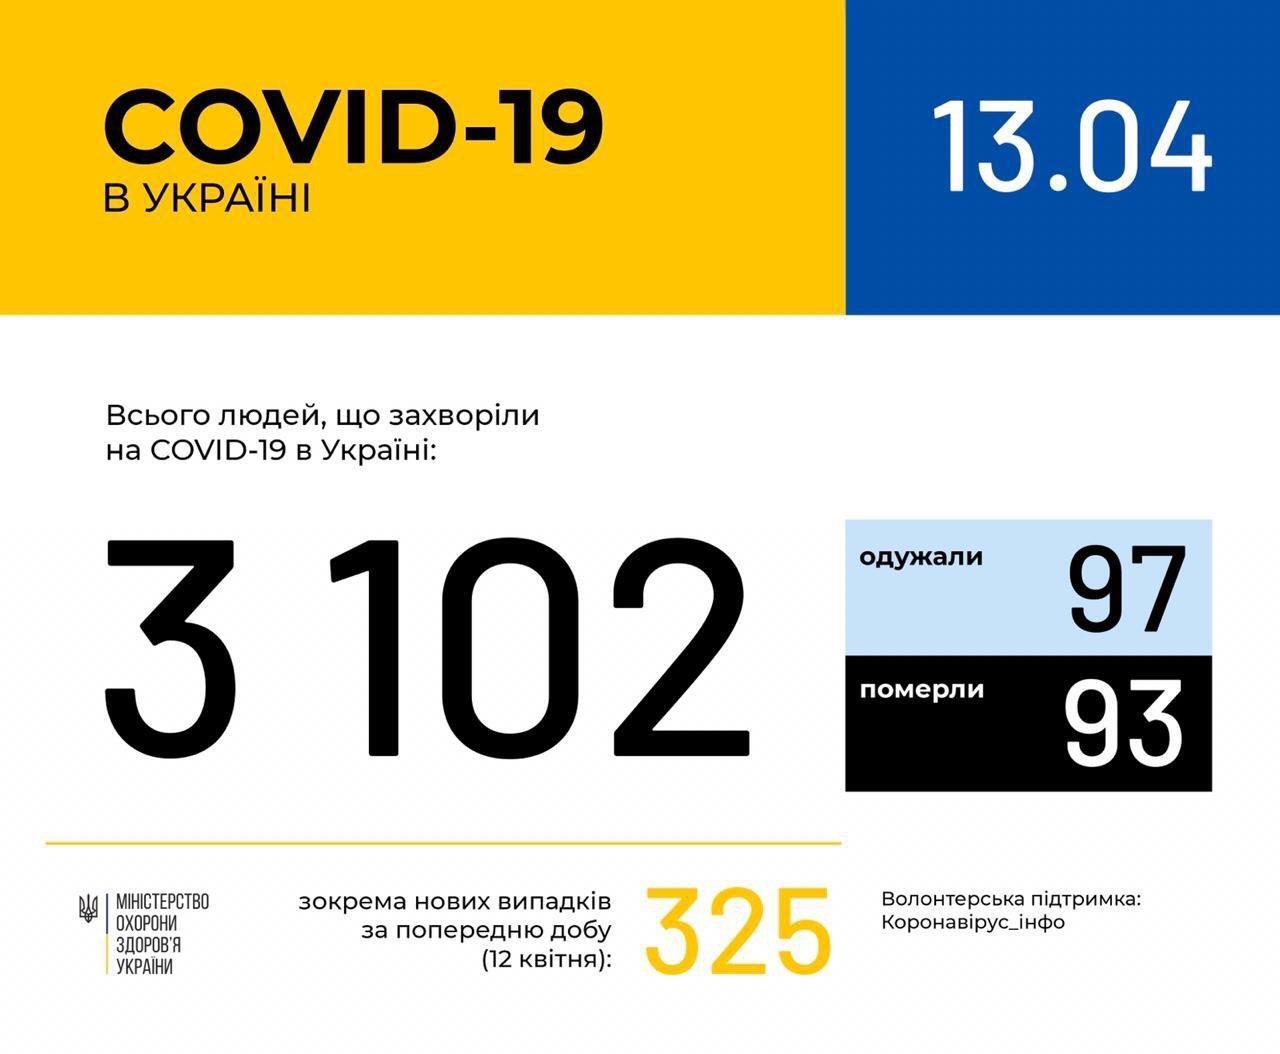 Коронавірус знову "вдарив" по Україні та світі: статистика на 13 квітня. Постійно оновлюється